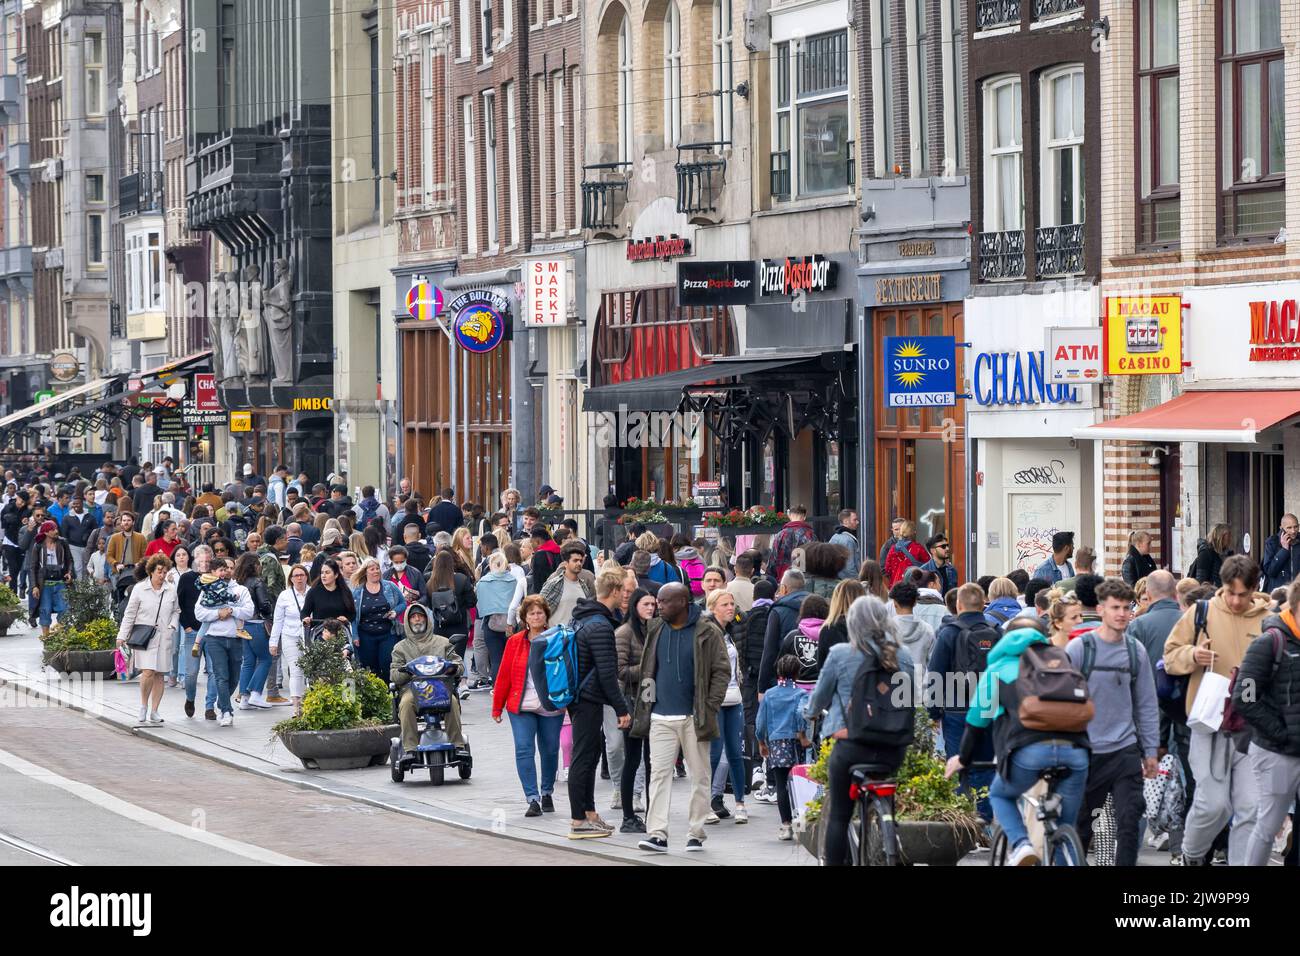 Una vista general de una calle concurrida en Ámsterdam, Holanda. Foto de stock